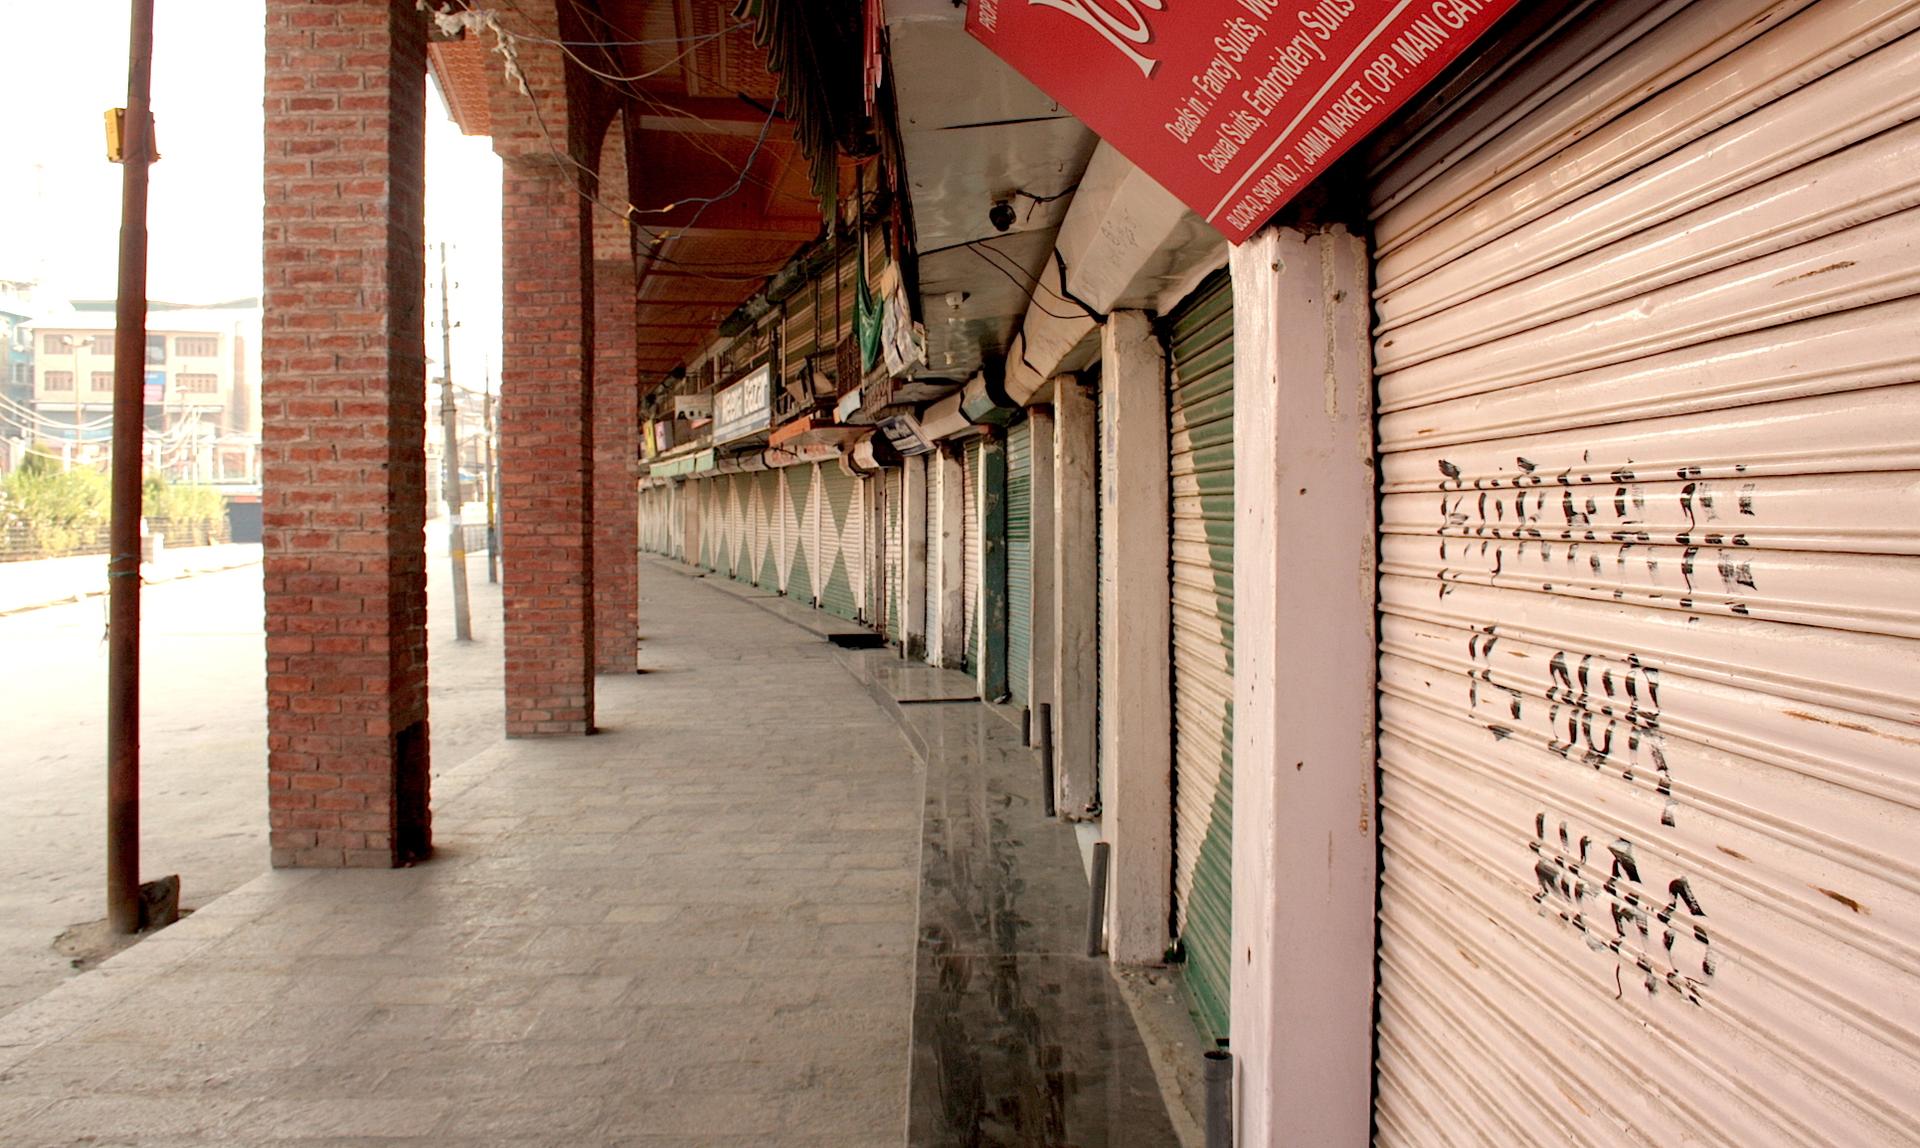 Srinagar strike shops shuttered